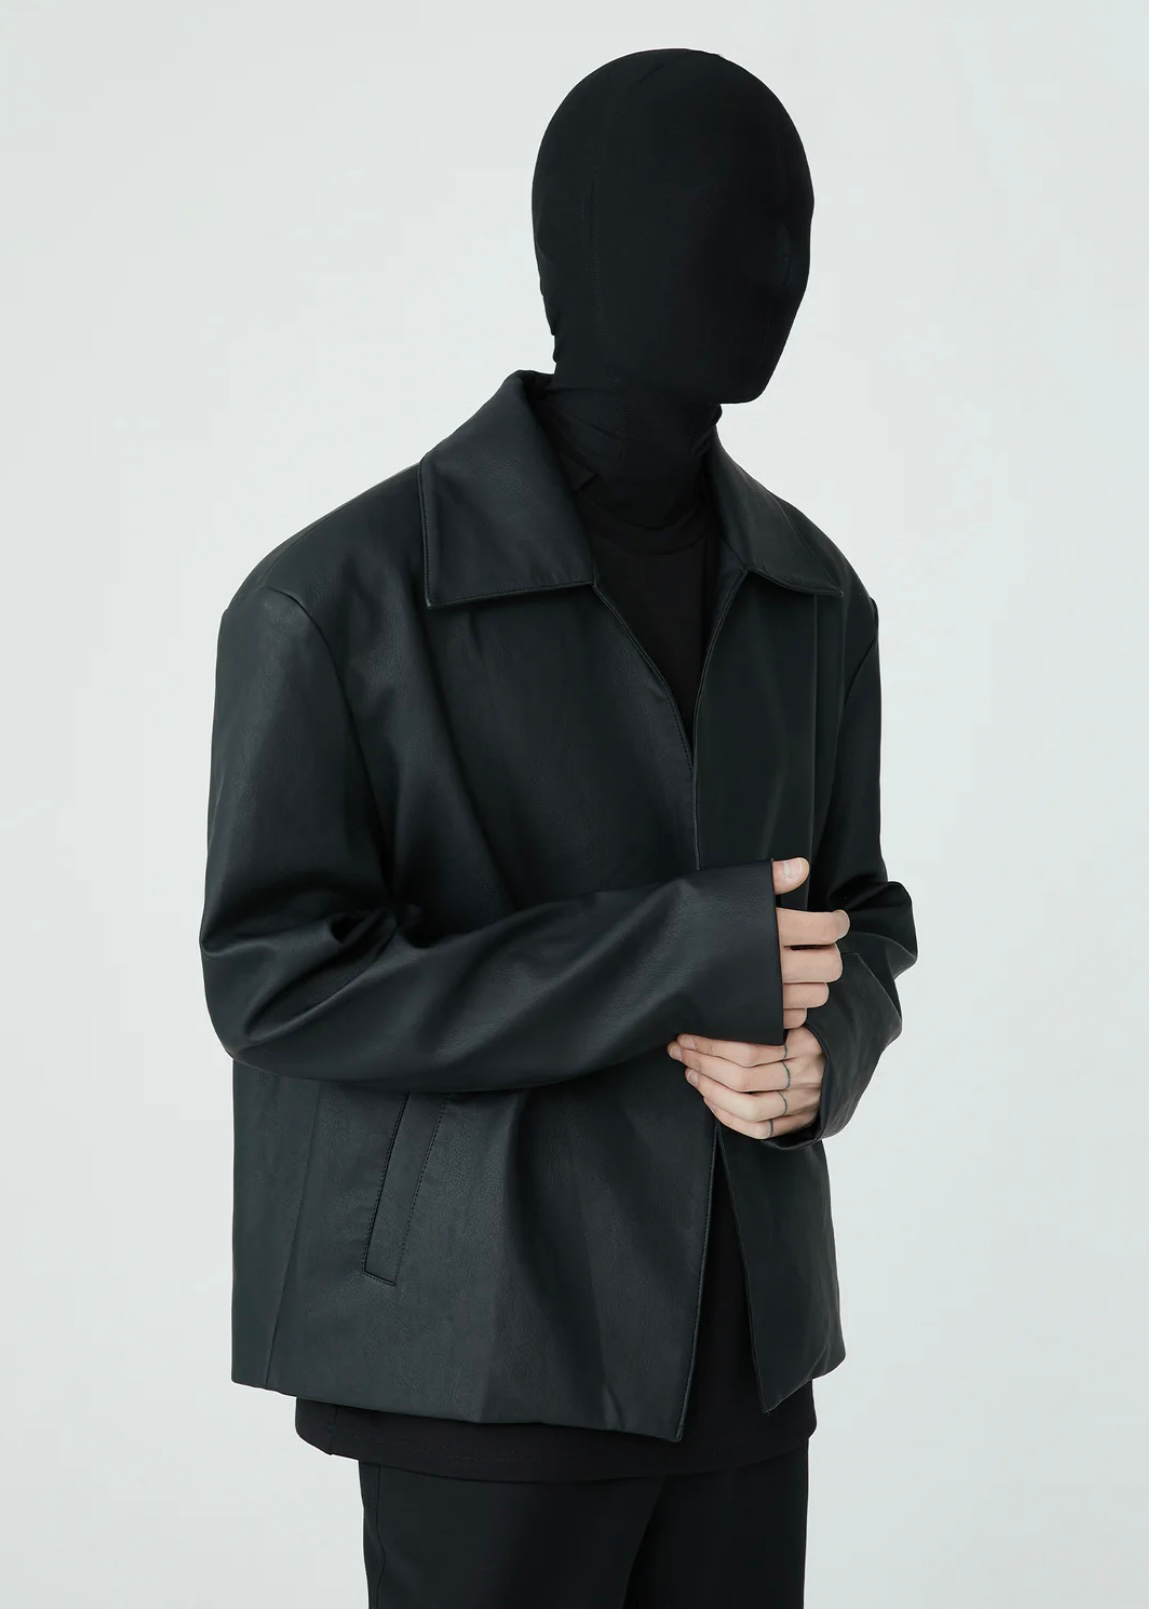 Noir Minimalist Leather Jacket